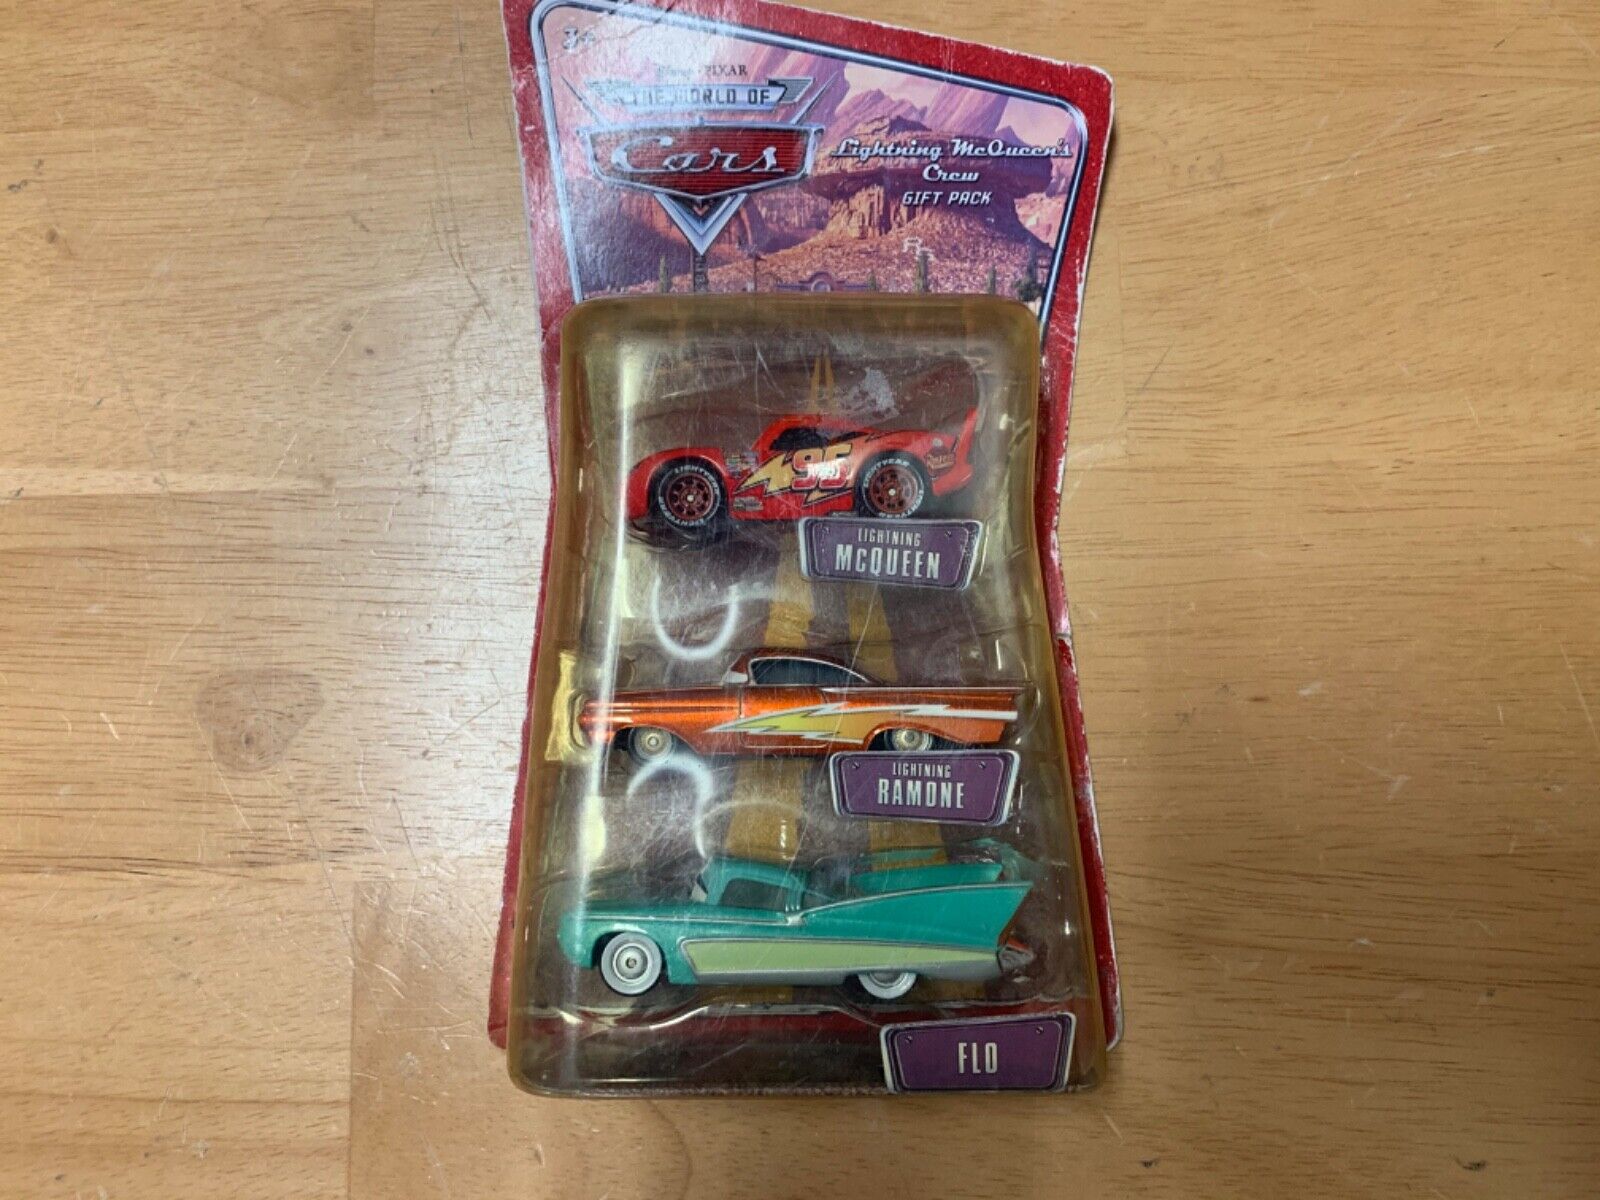 Disney Pixar Cars World of Cars Lightning McQueen’s Crew Gift Pack